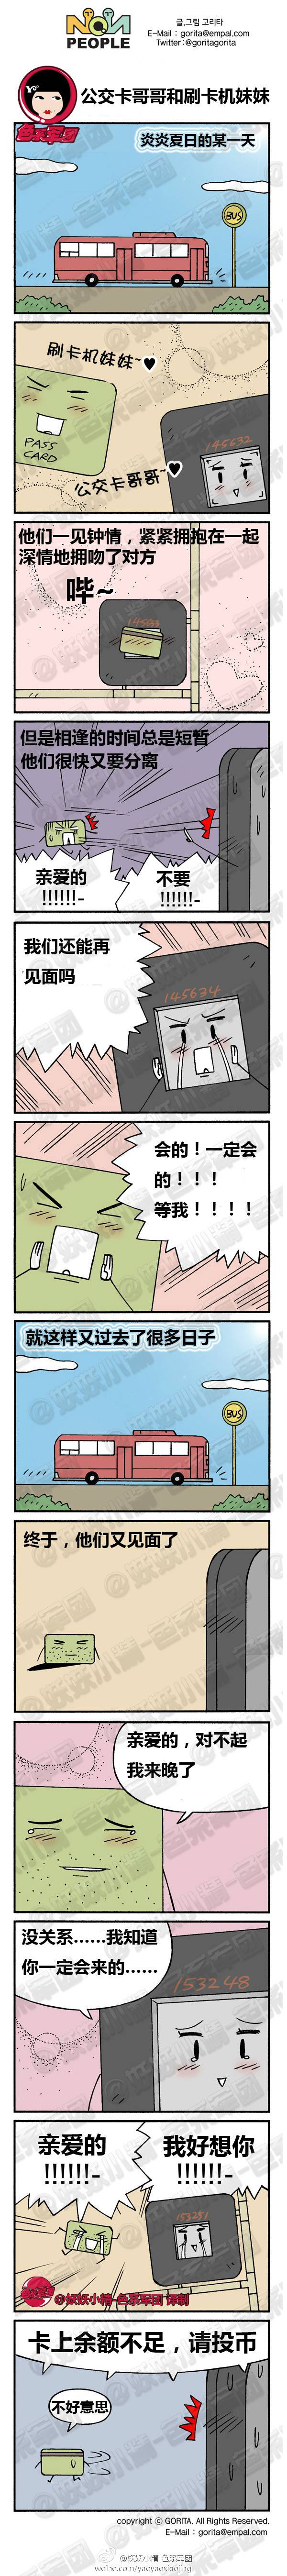 邪恶漫画爆笑囧图第267刊：老公的担心